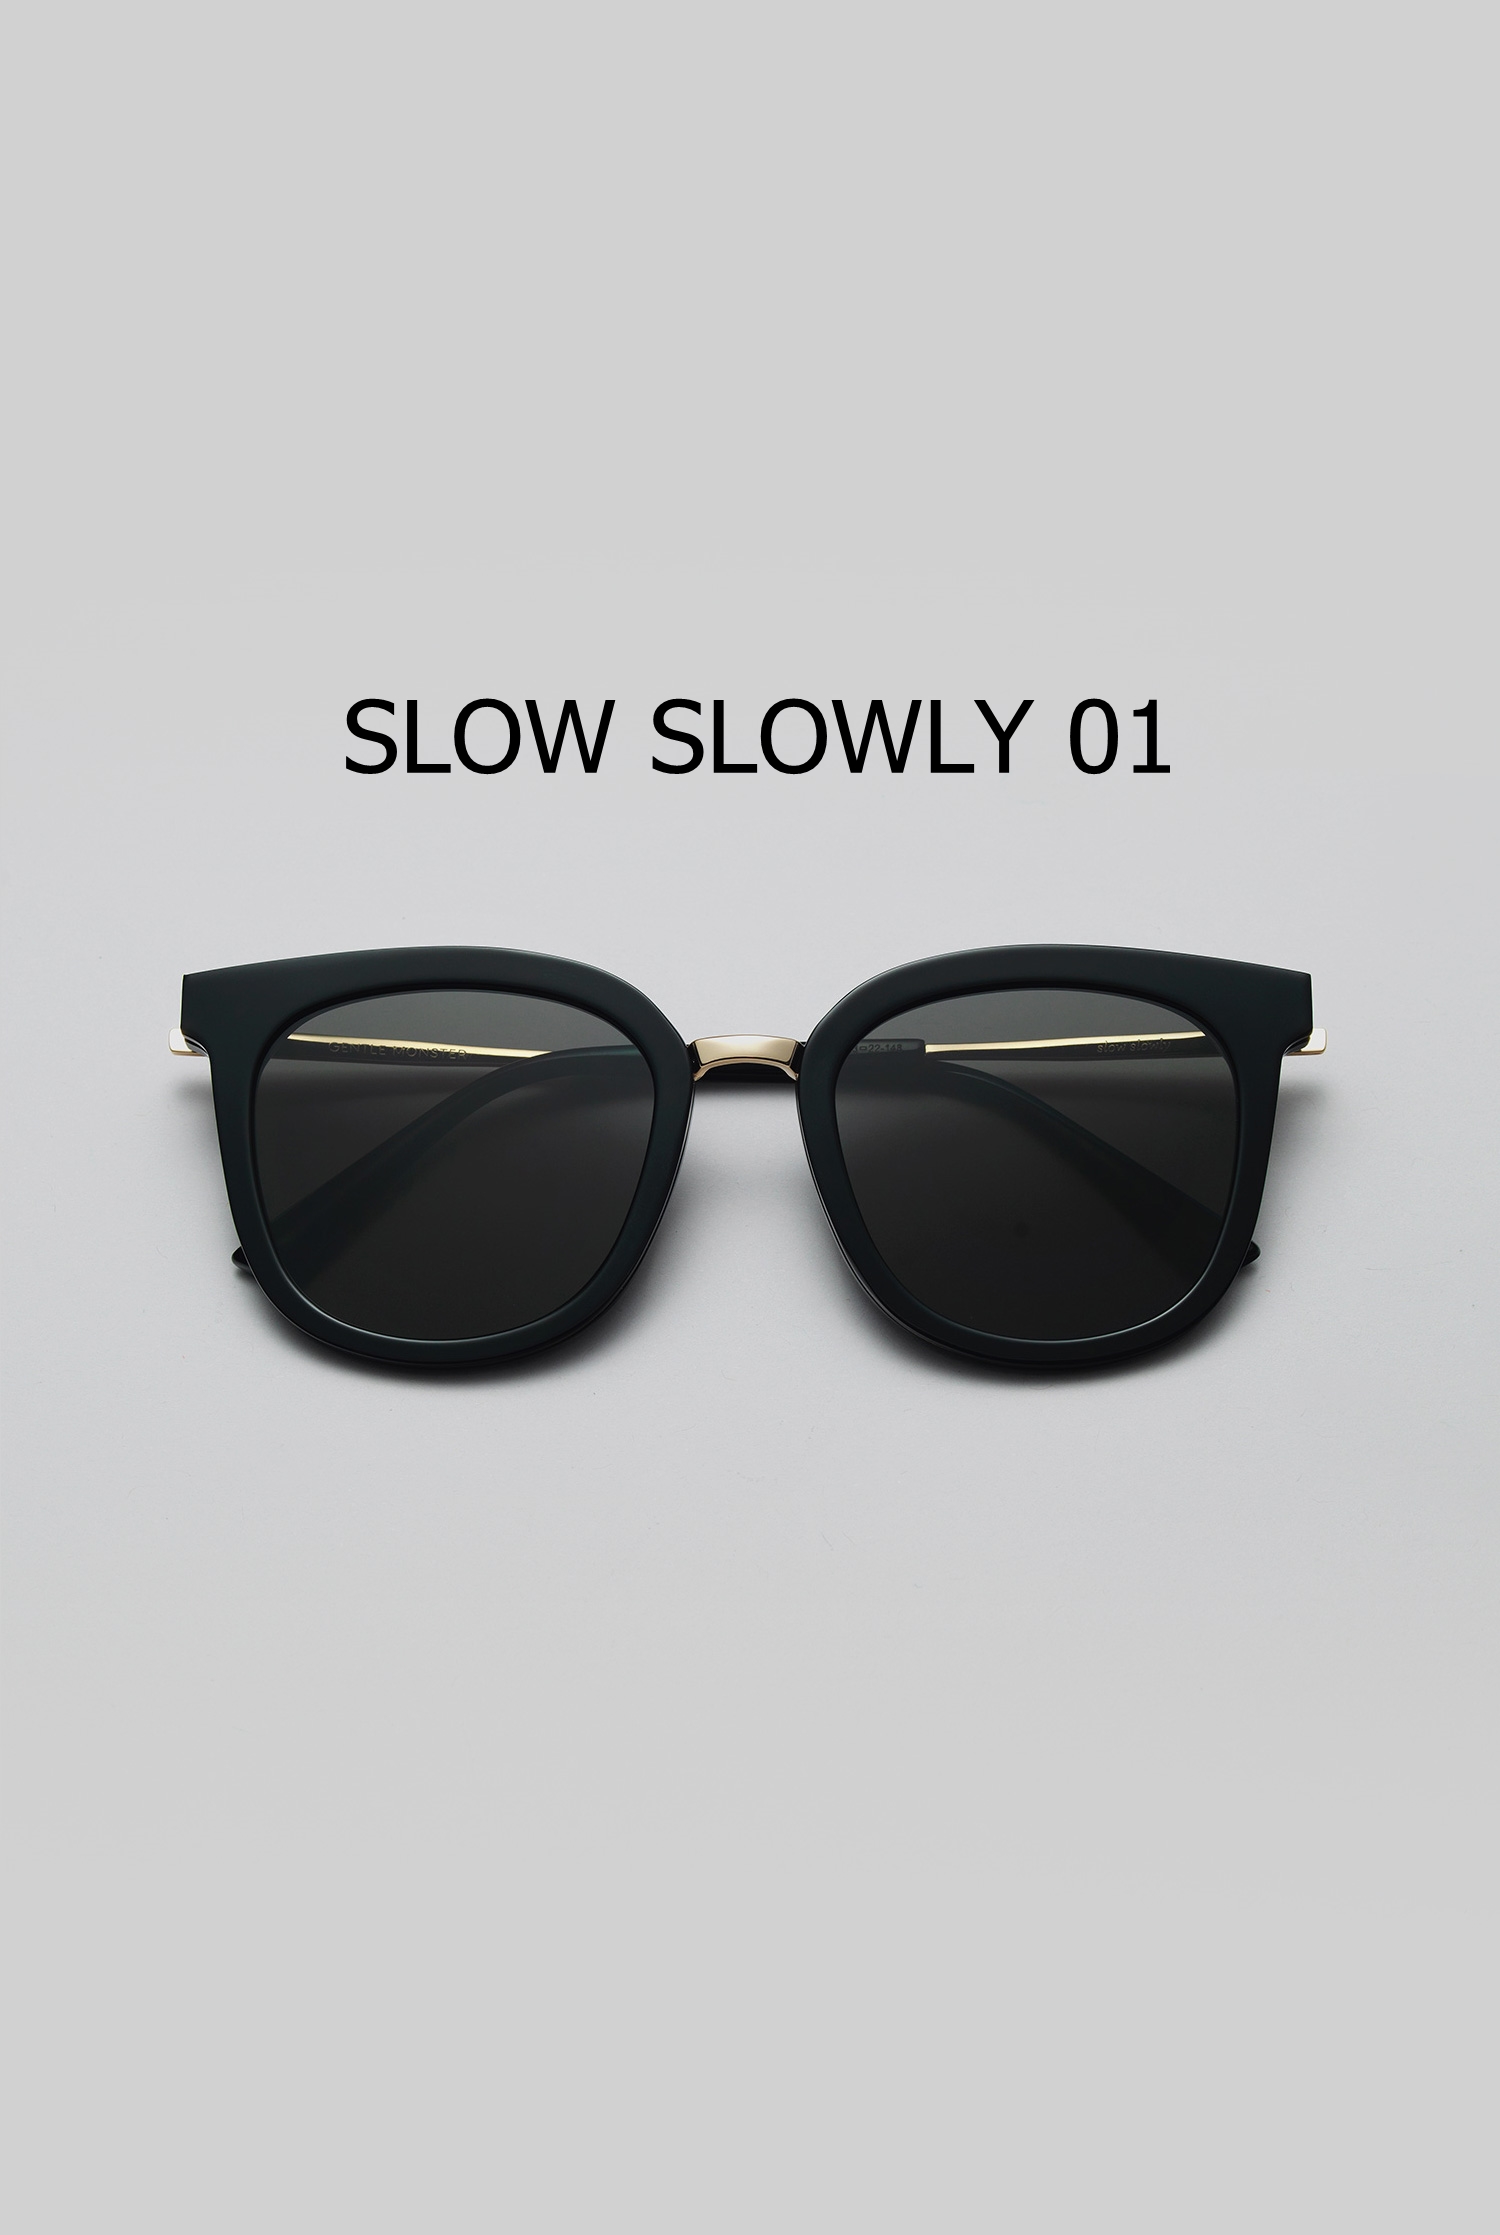 SLOW SLOWLY 01 